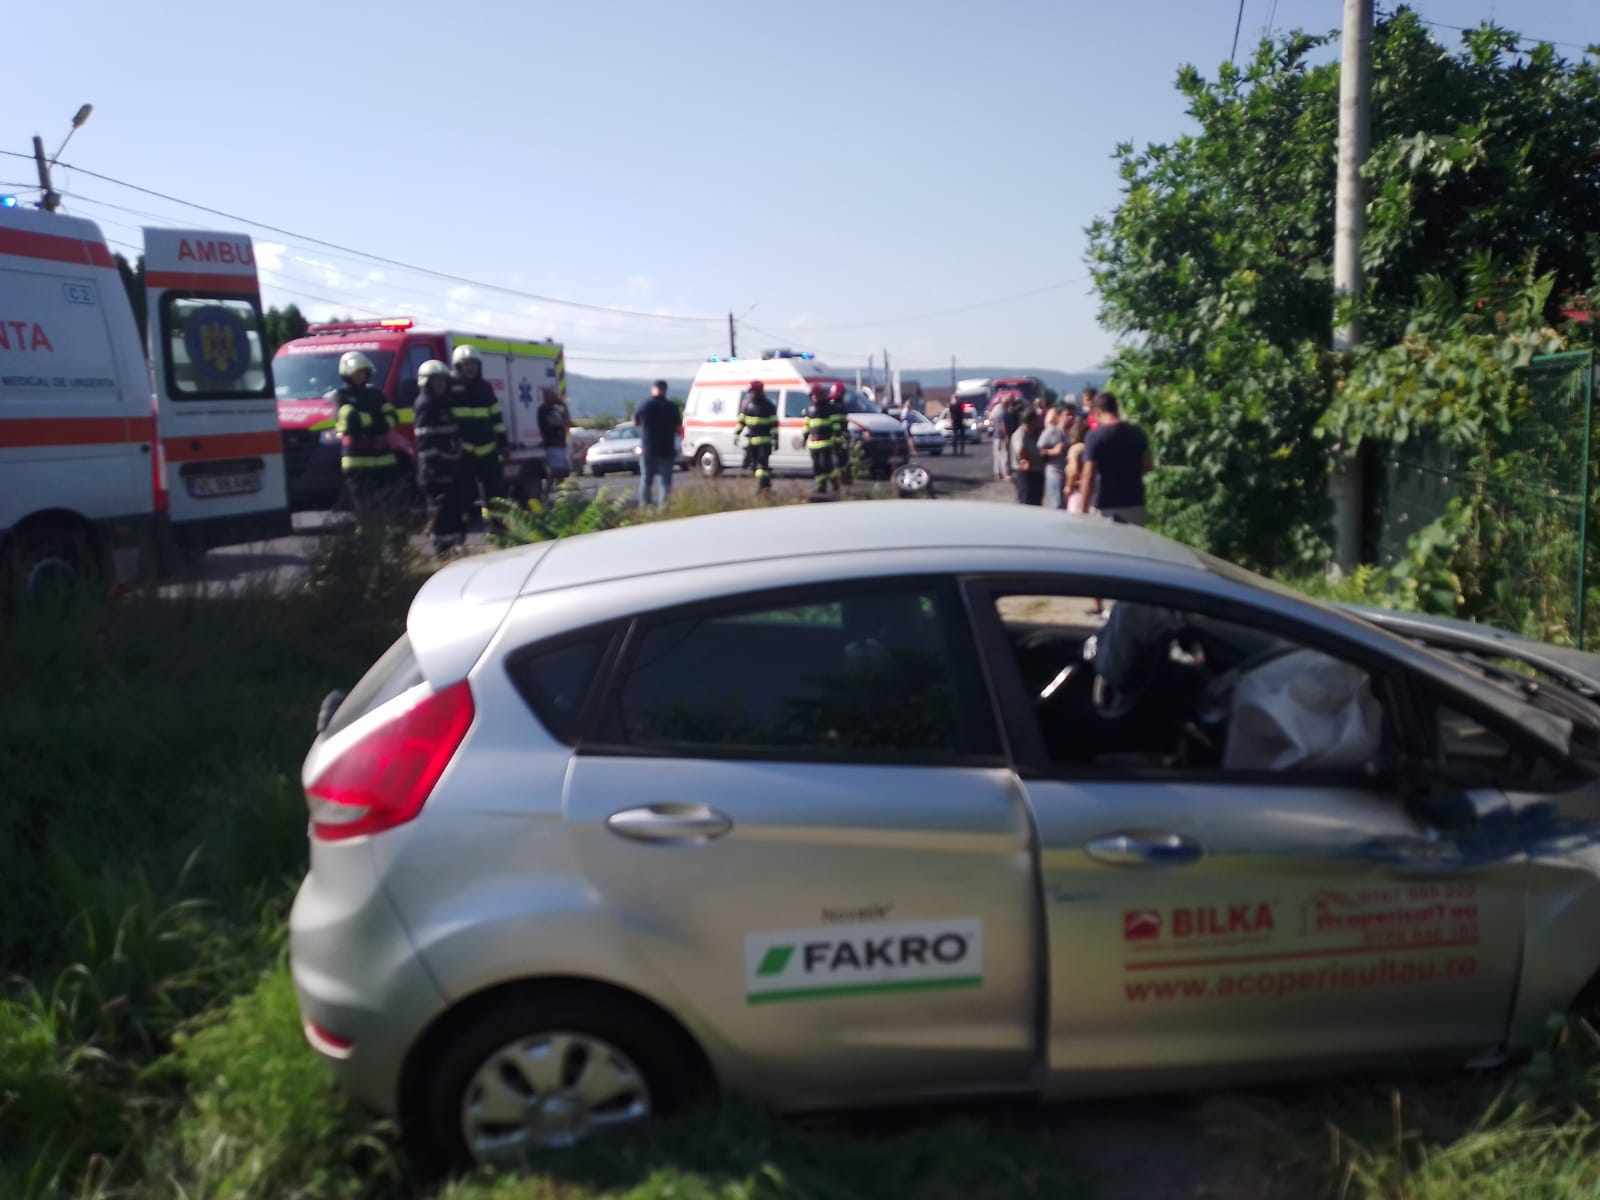 FOTO&VIDEO. Accident cu trei autoturisme şi o autoutilitară, pe strada Calea Bucureşti, din Râmnicu Vâlcea